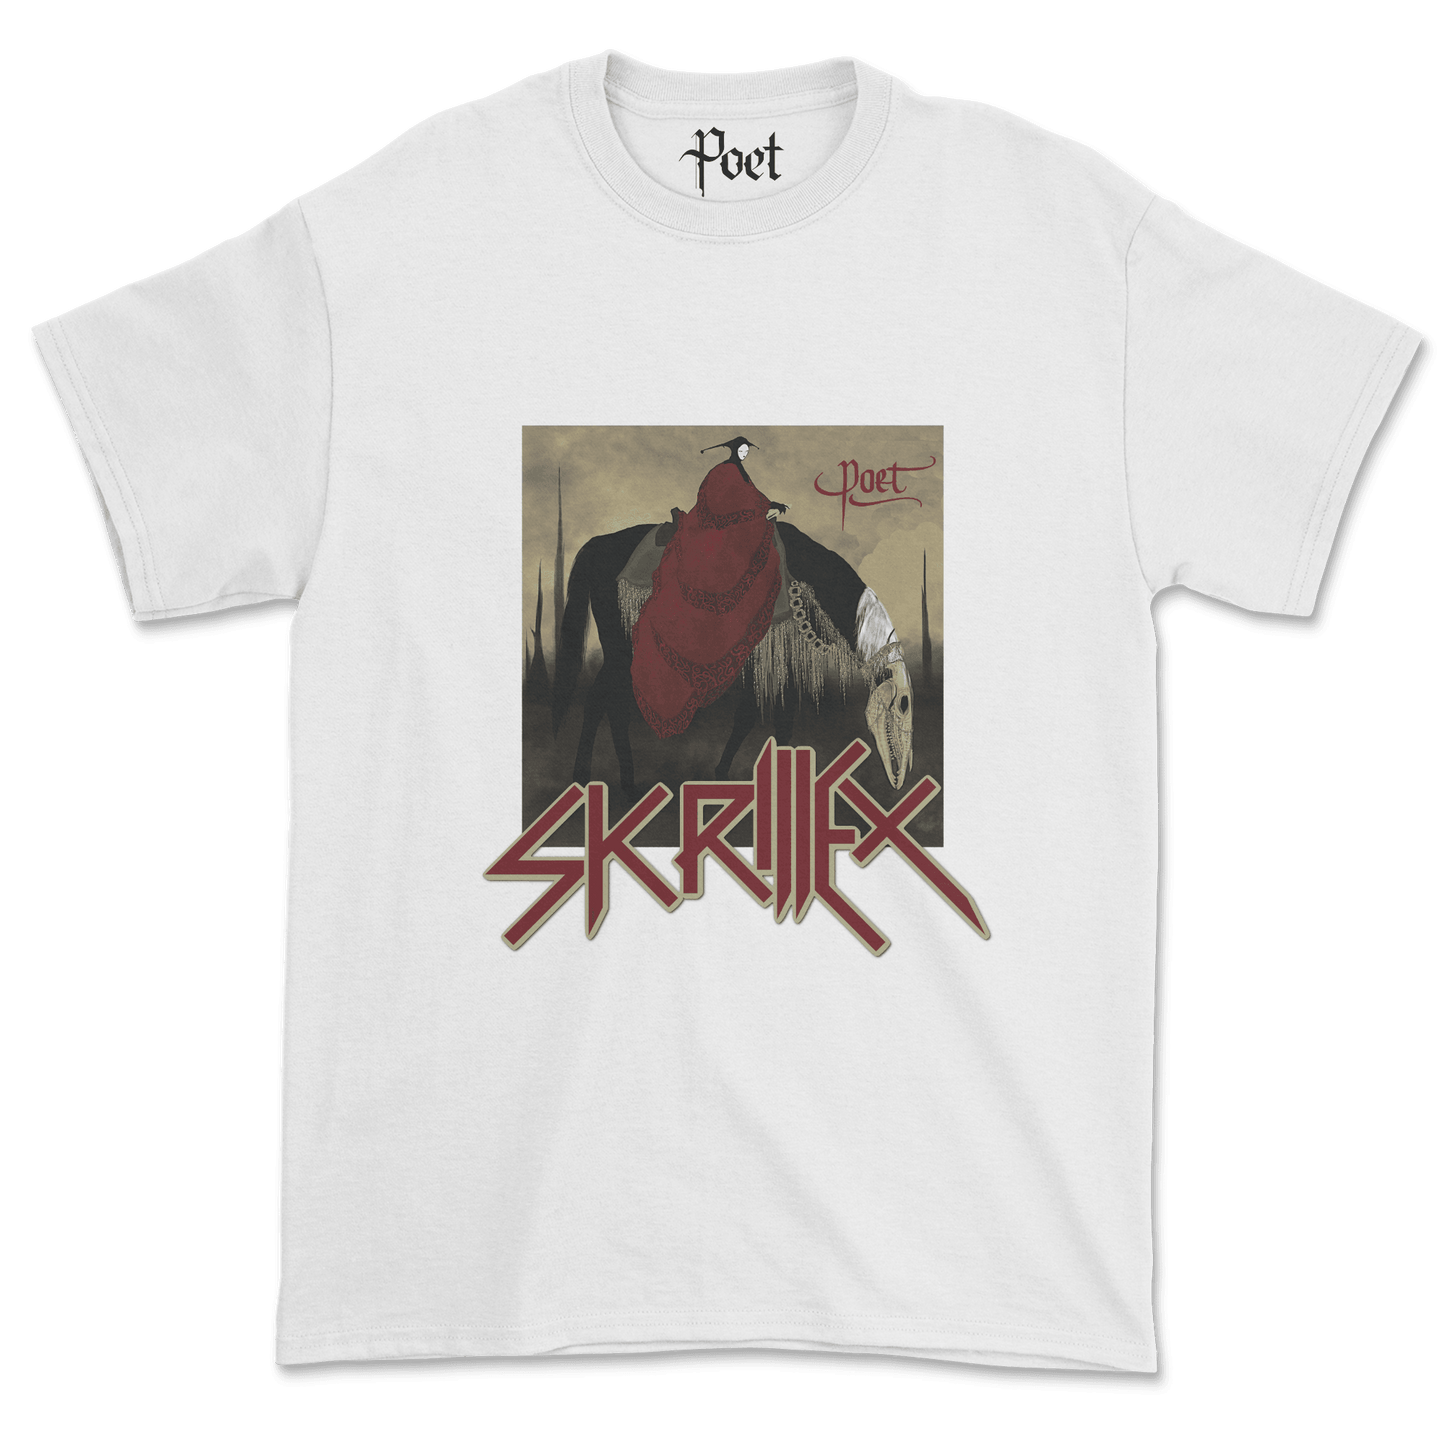 Skrillex Quest for Fire T-Shirt - Poet Archives